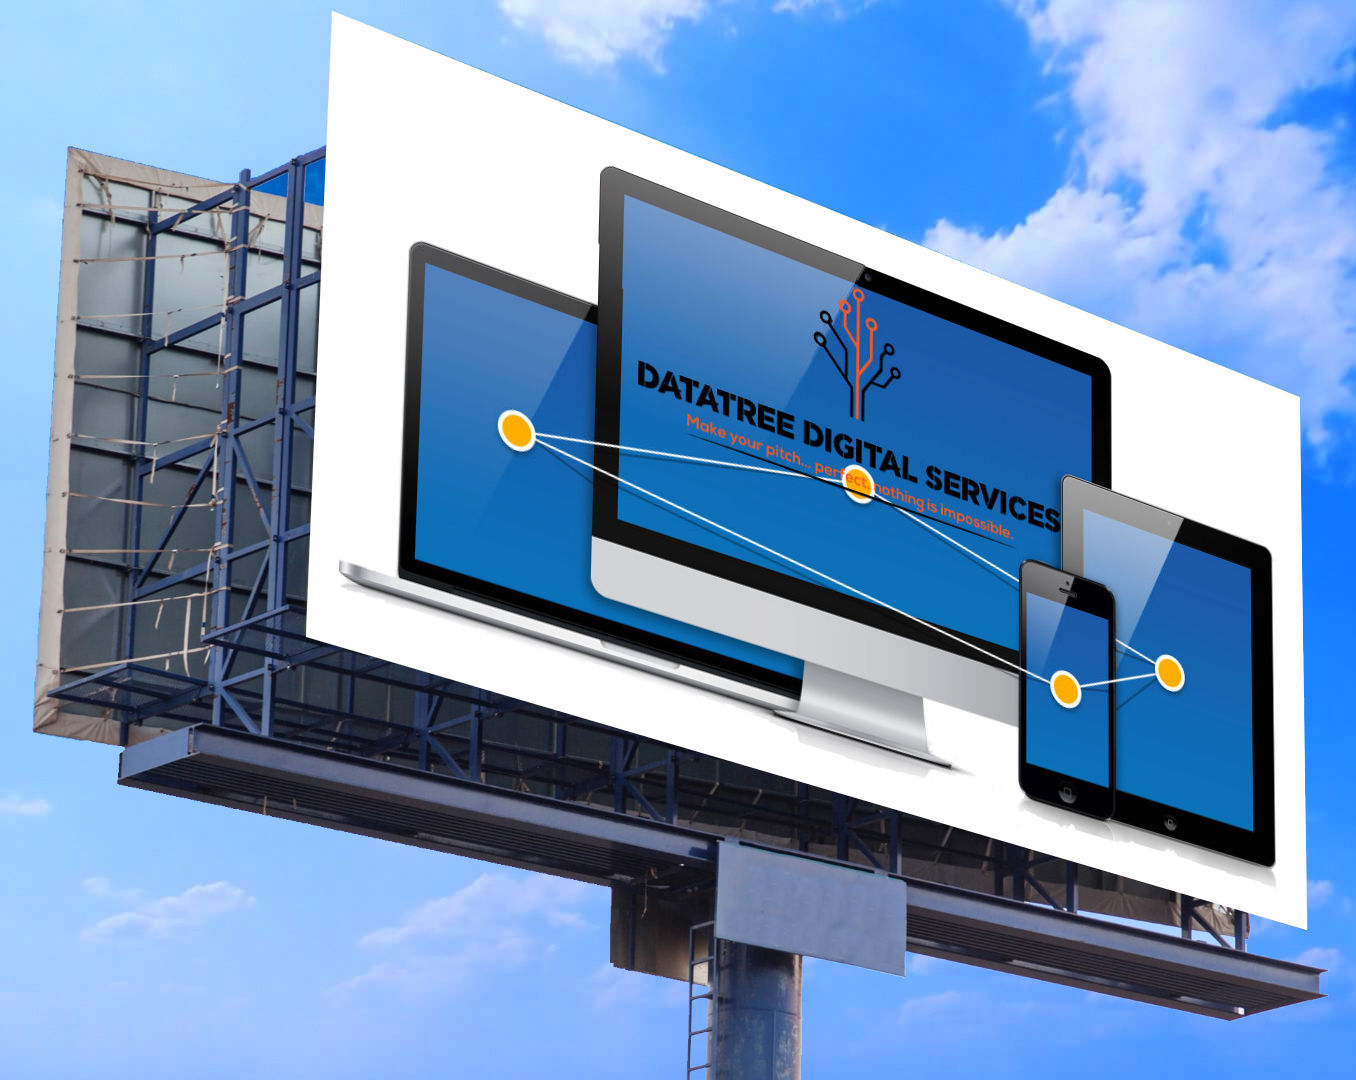 Billboard Datatree Digiotal Services